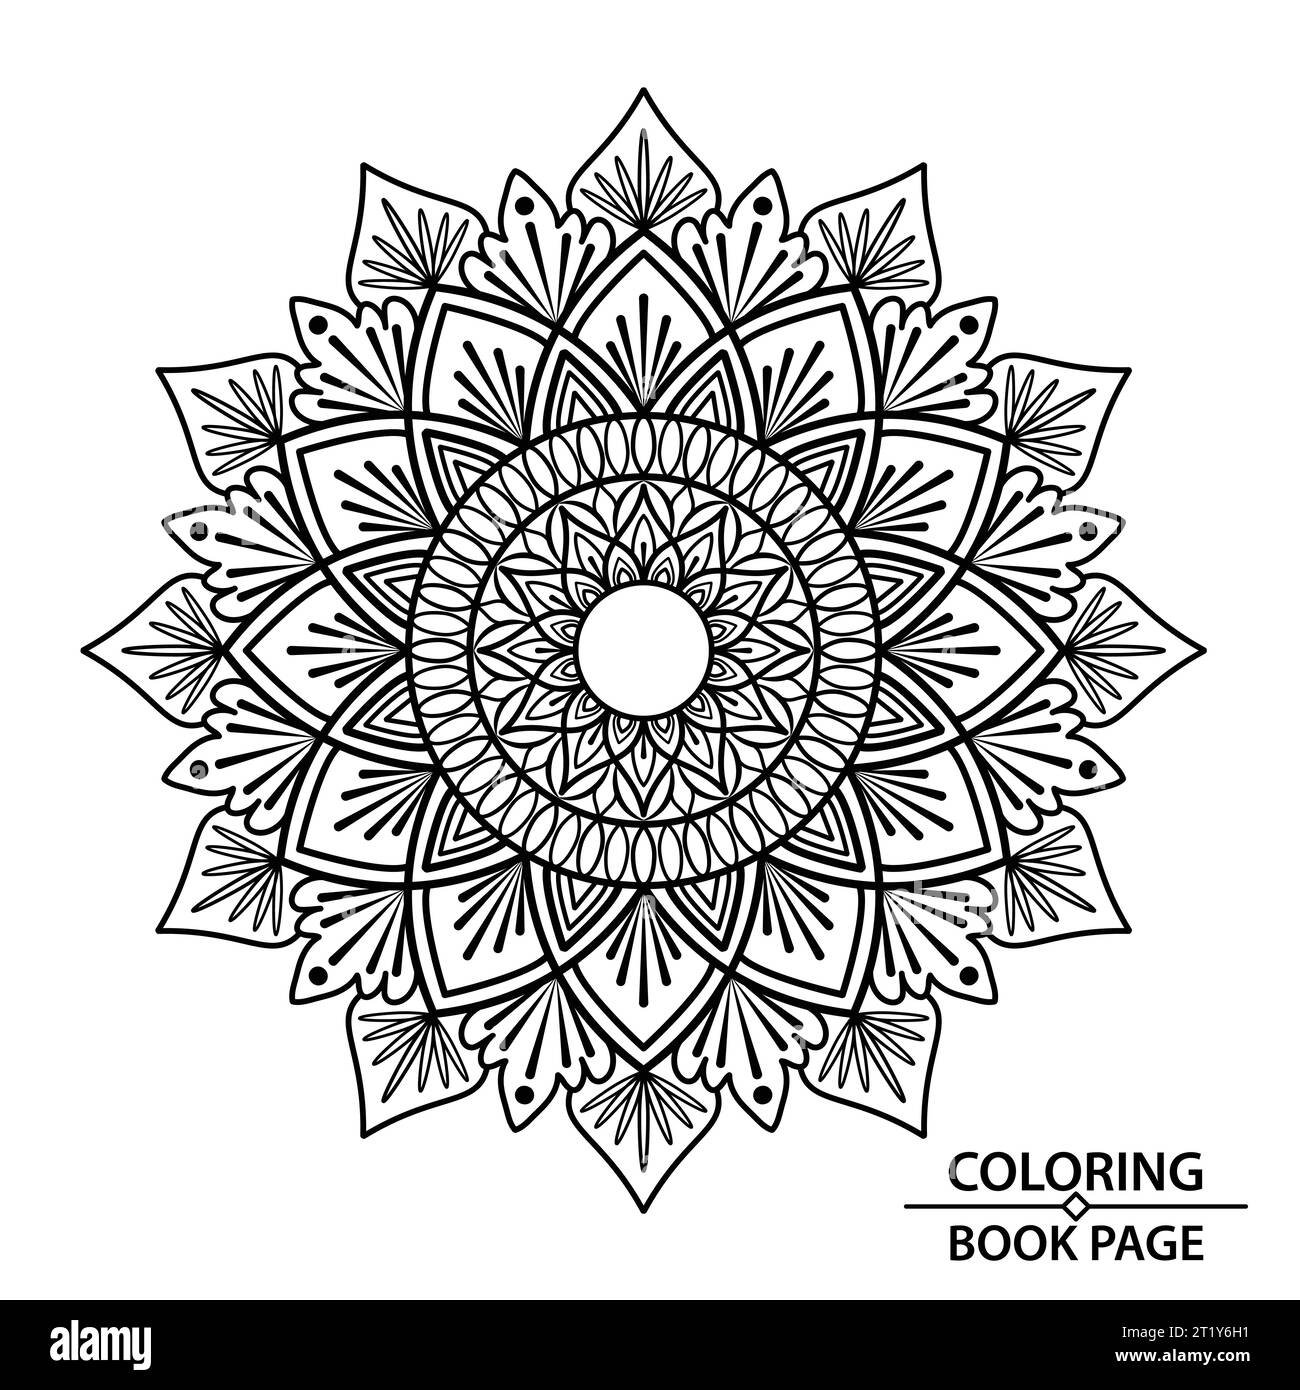 Mandala delle affermazioni personalizzate di Coloring Book Page per bambini. Easy Mandala Coloring Book Pages per adulti, capacità di rilassarsi, esperienze cerebrali donano Illustrazione Vettoriale